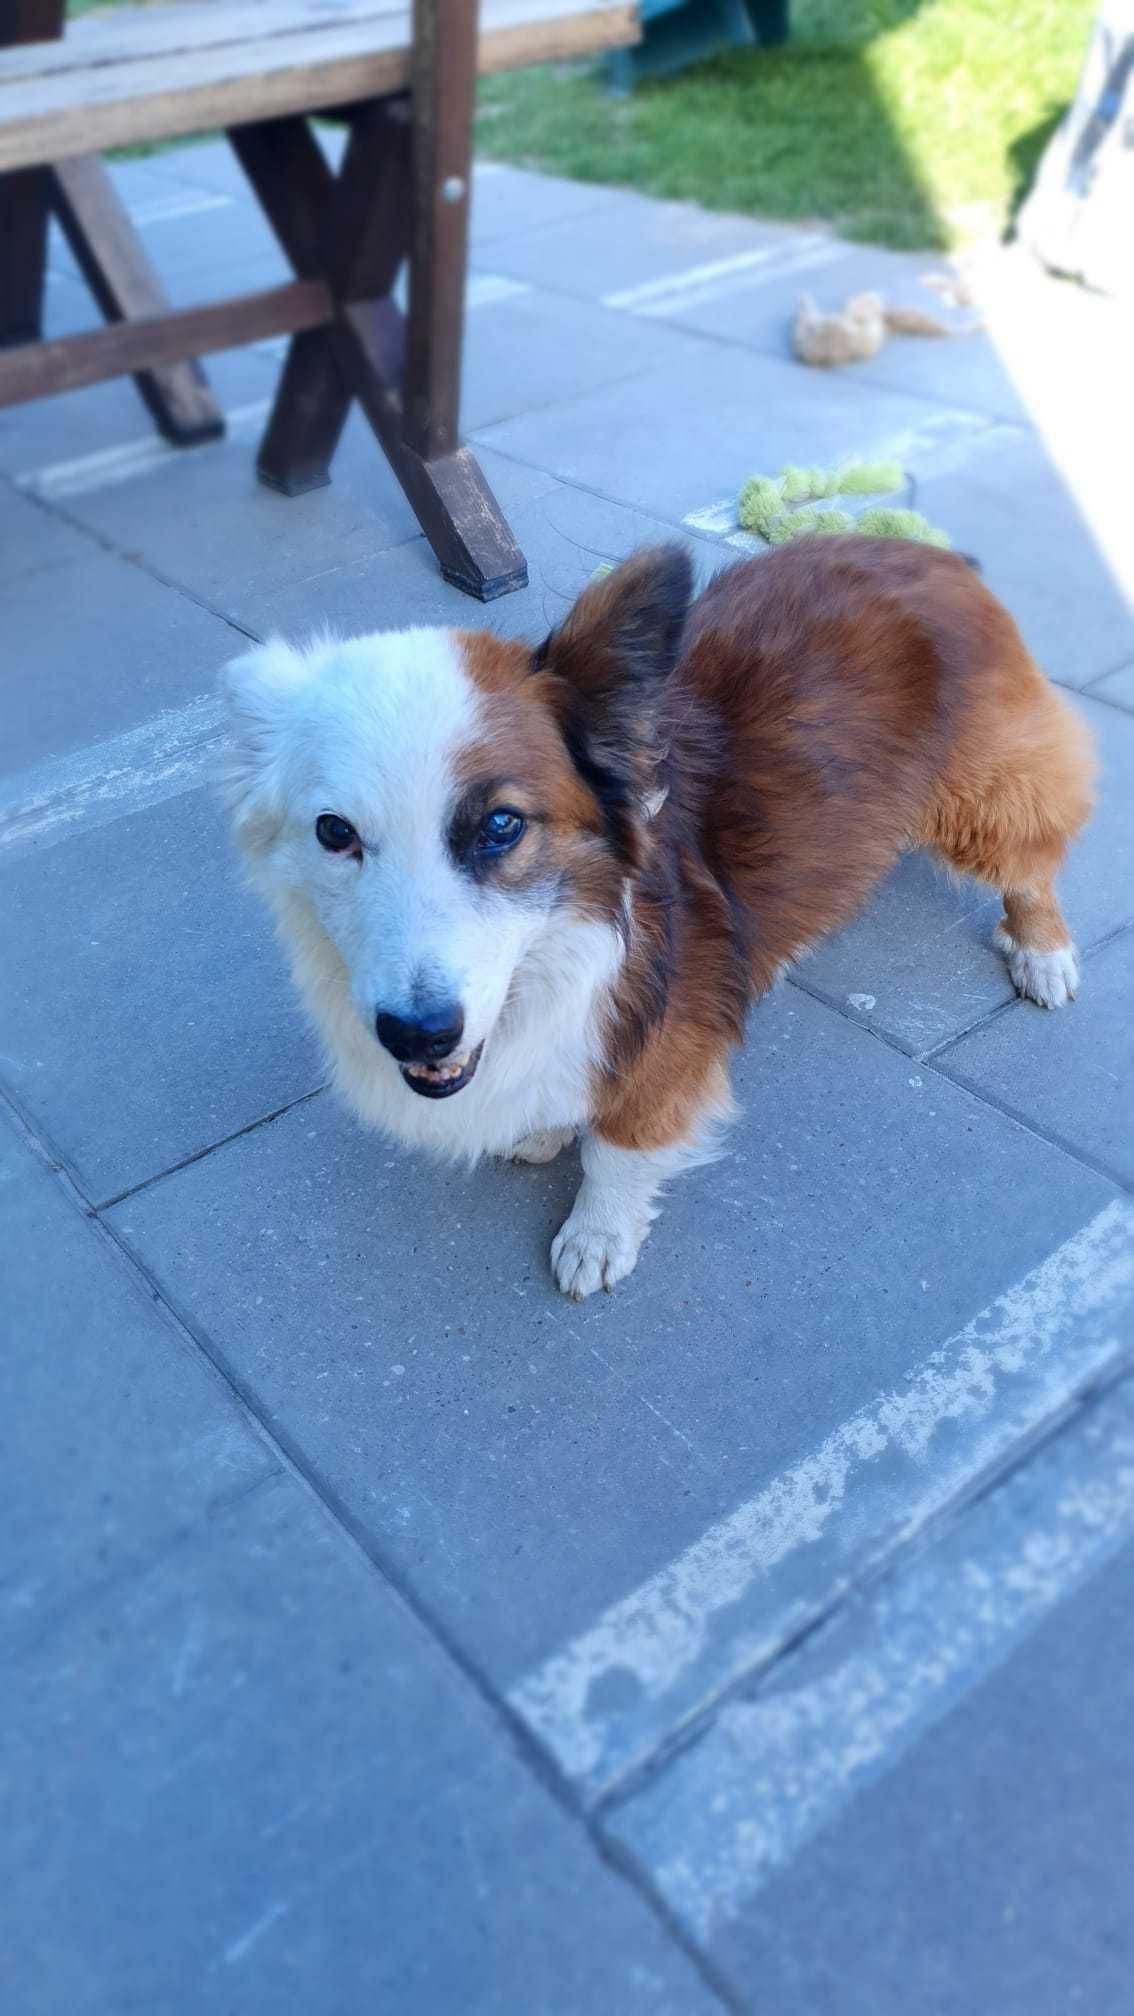 Flapi - starszy pies w typie Corgi szuka domu